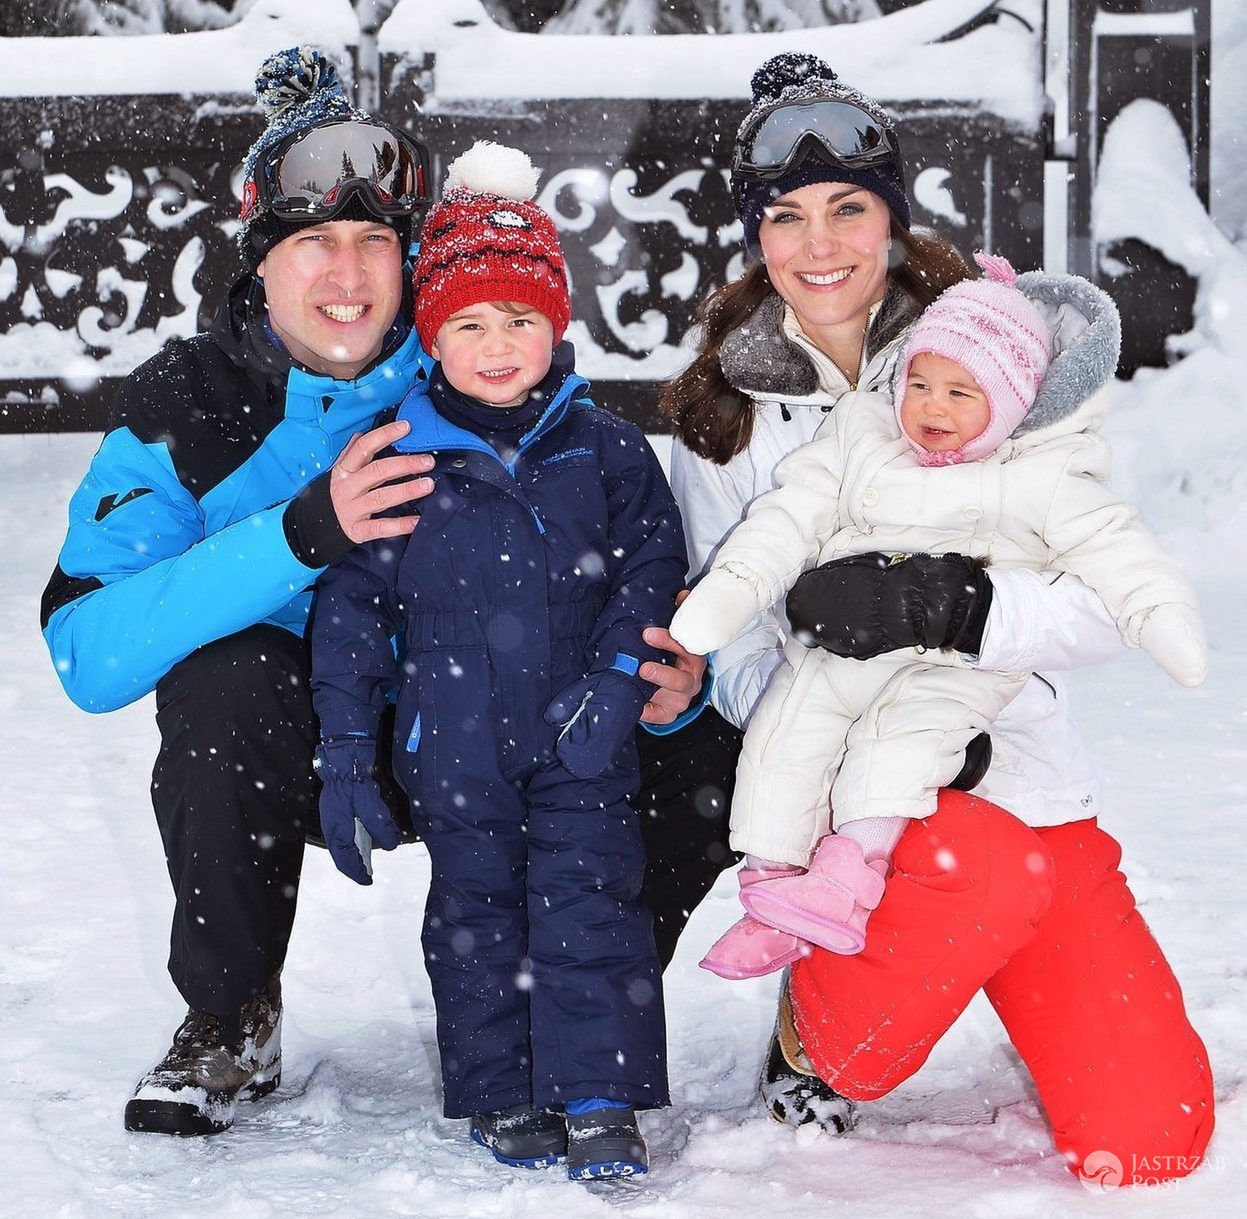 Książę William i księżna Kate z dziećmi, księciem George'em i księżniczką Charlotte, na nartach w francuskich Alpach (fot. East News)